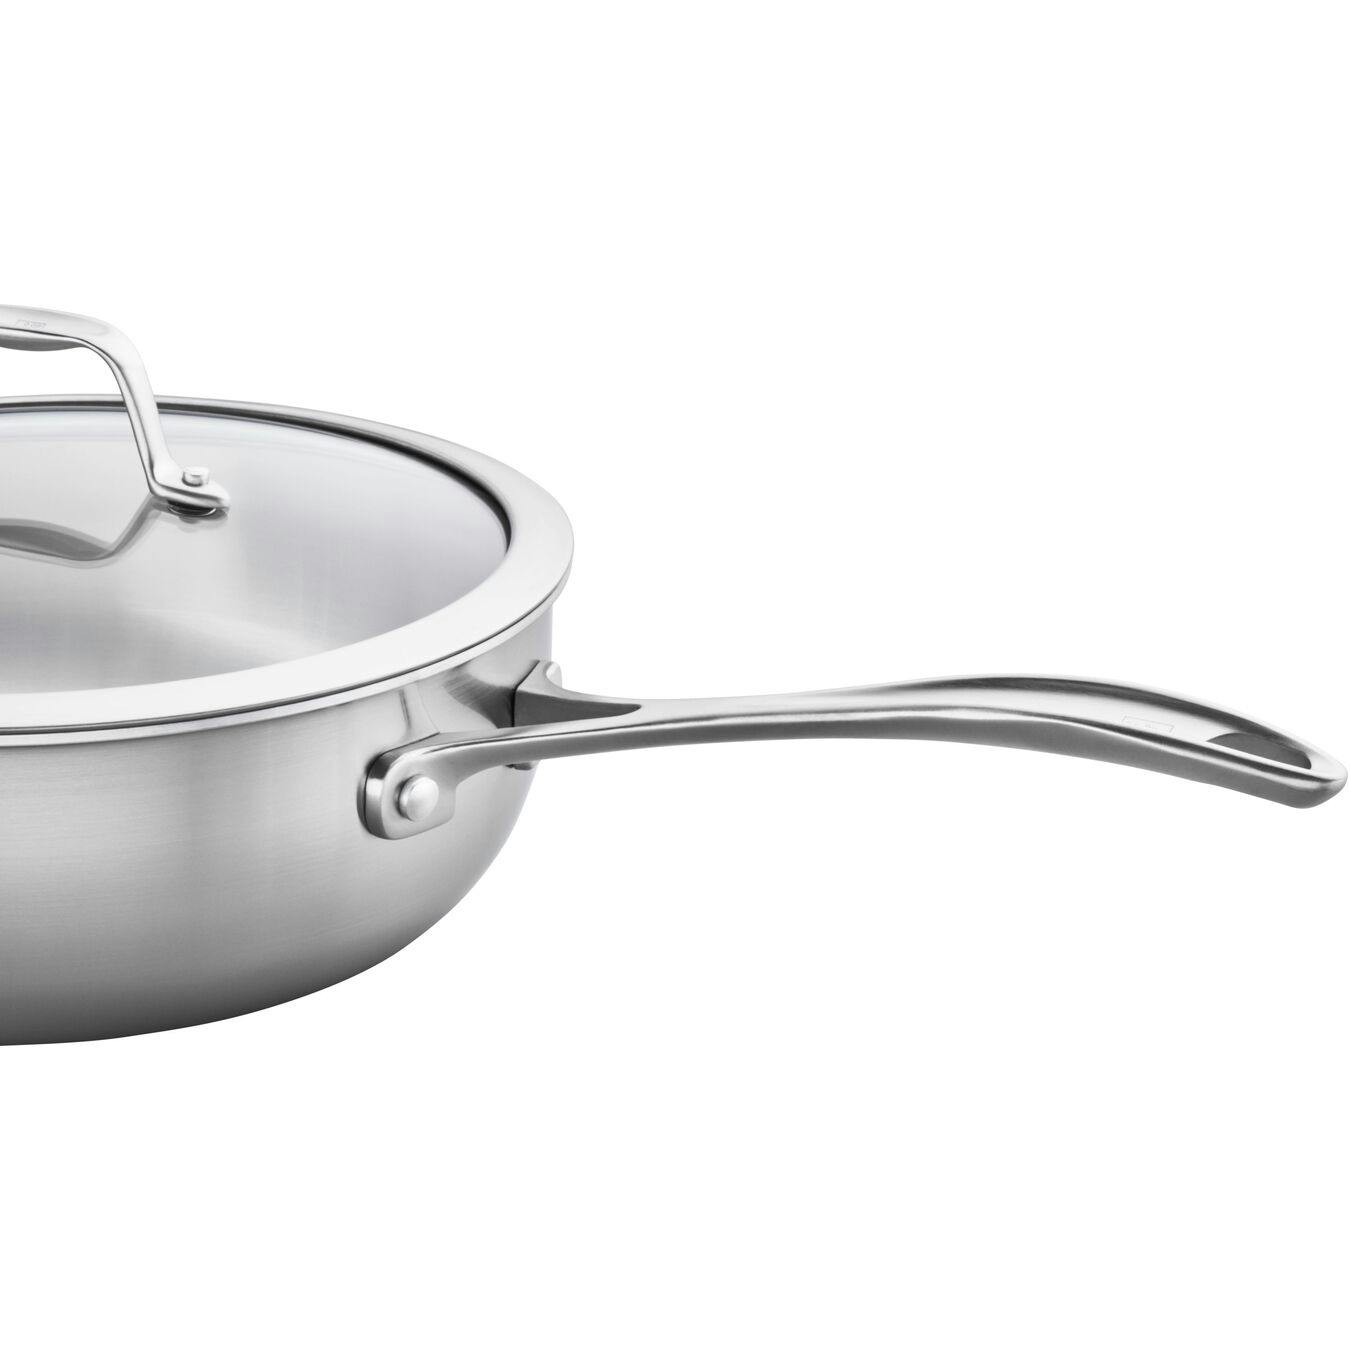 Buy ZWILLING Spirit Stainless Frying pan